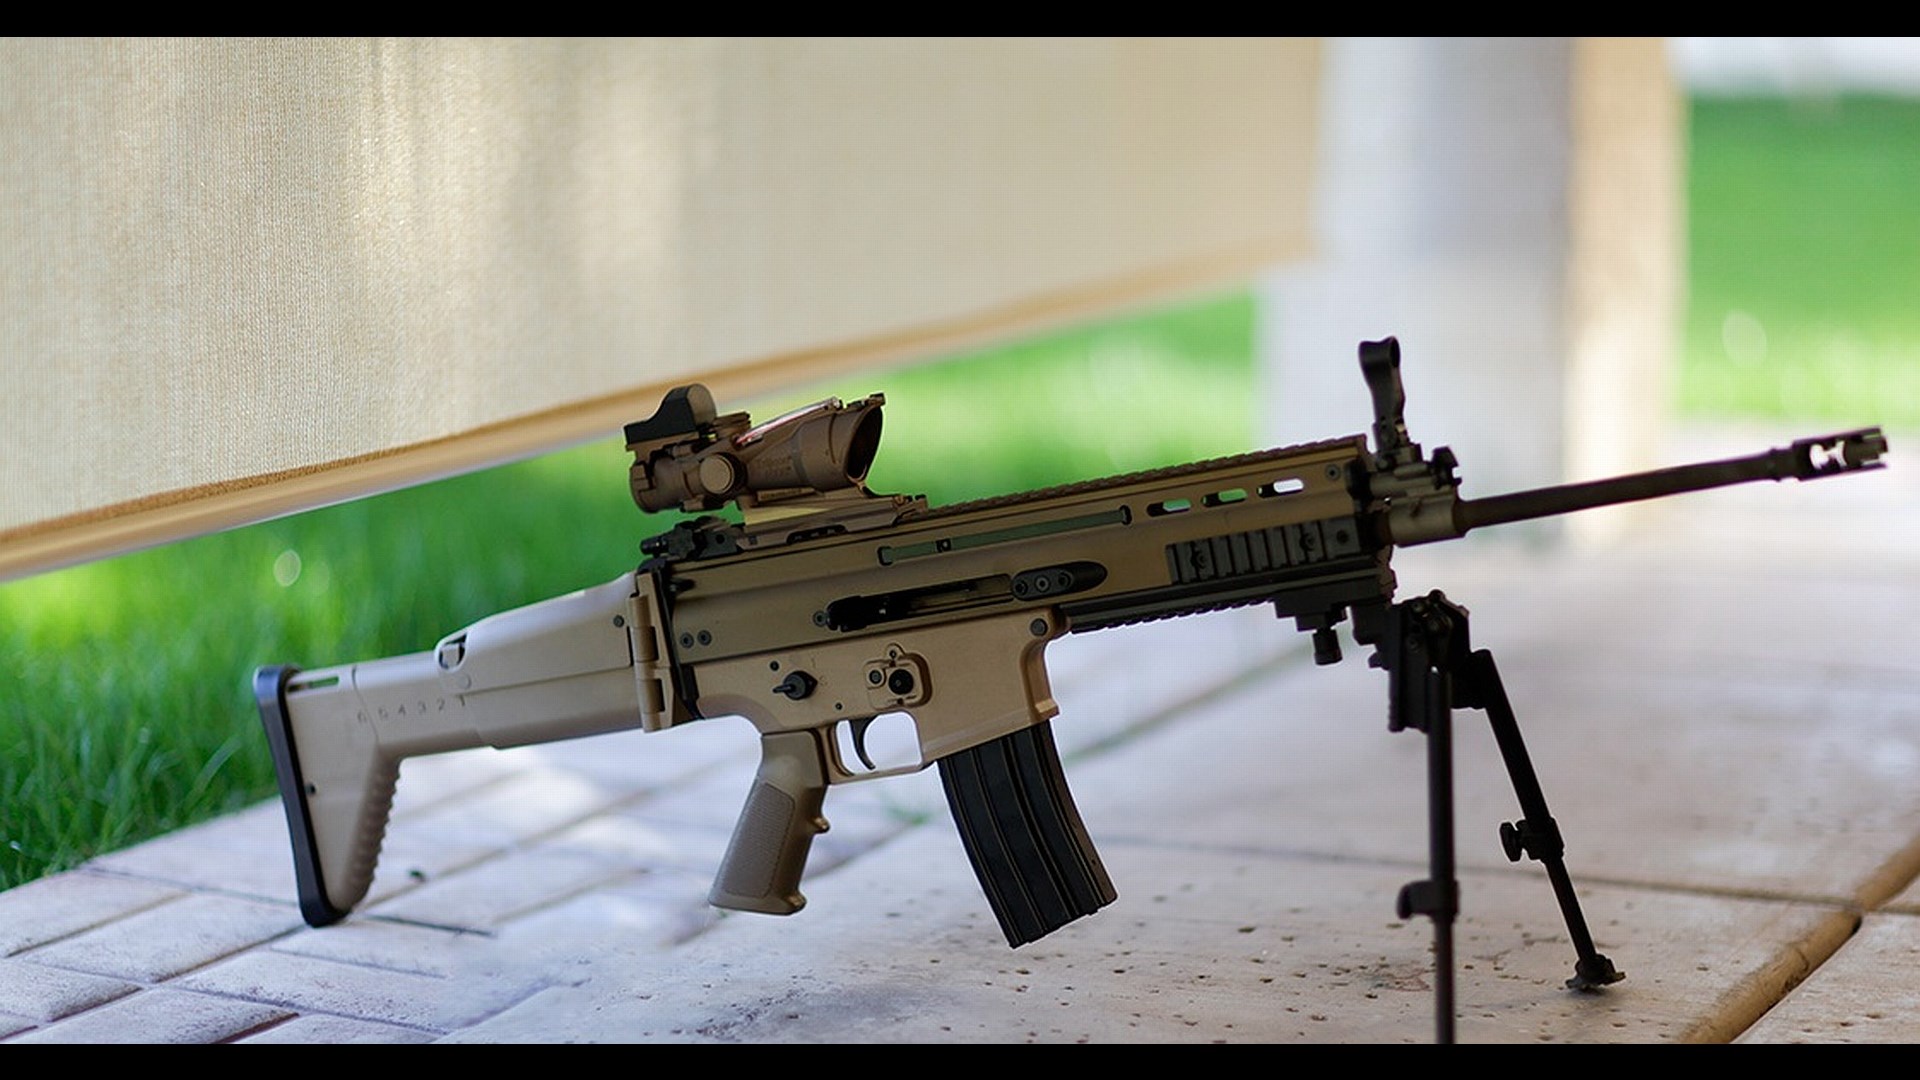 Mk 20 Ssr Assault Rifle Backgrounds on Wallpapers Vista